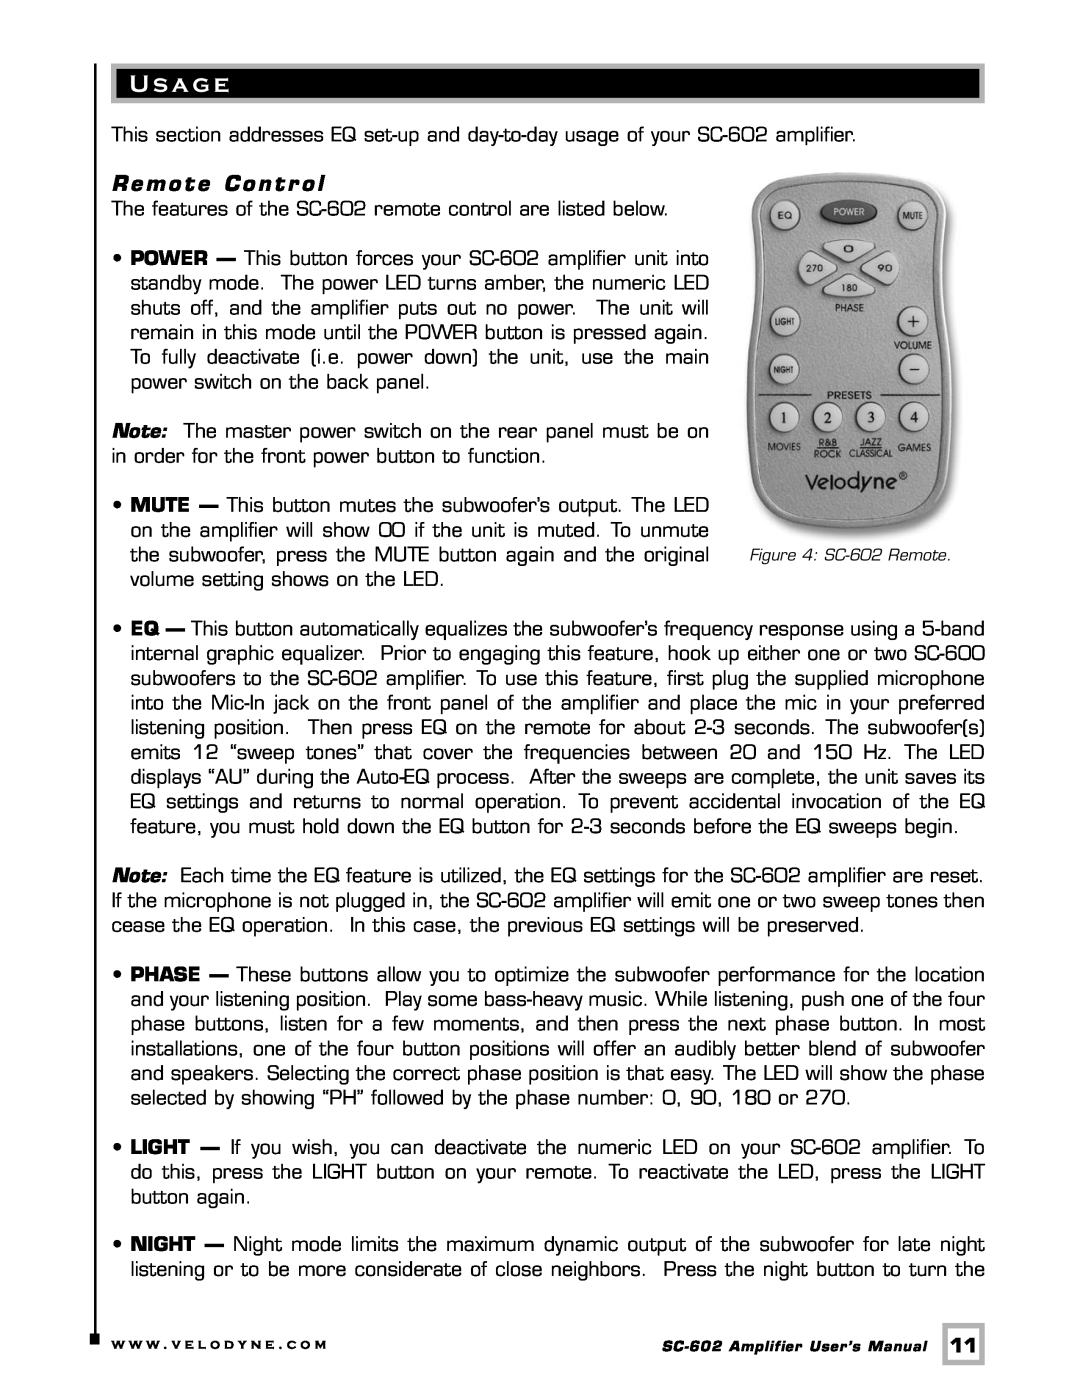 Velodyne Acoustics SC-602 user manual U s a ge, Remote Contr ol 